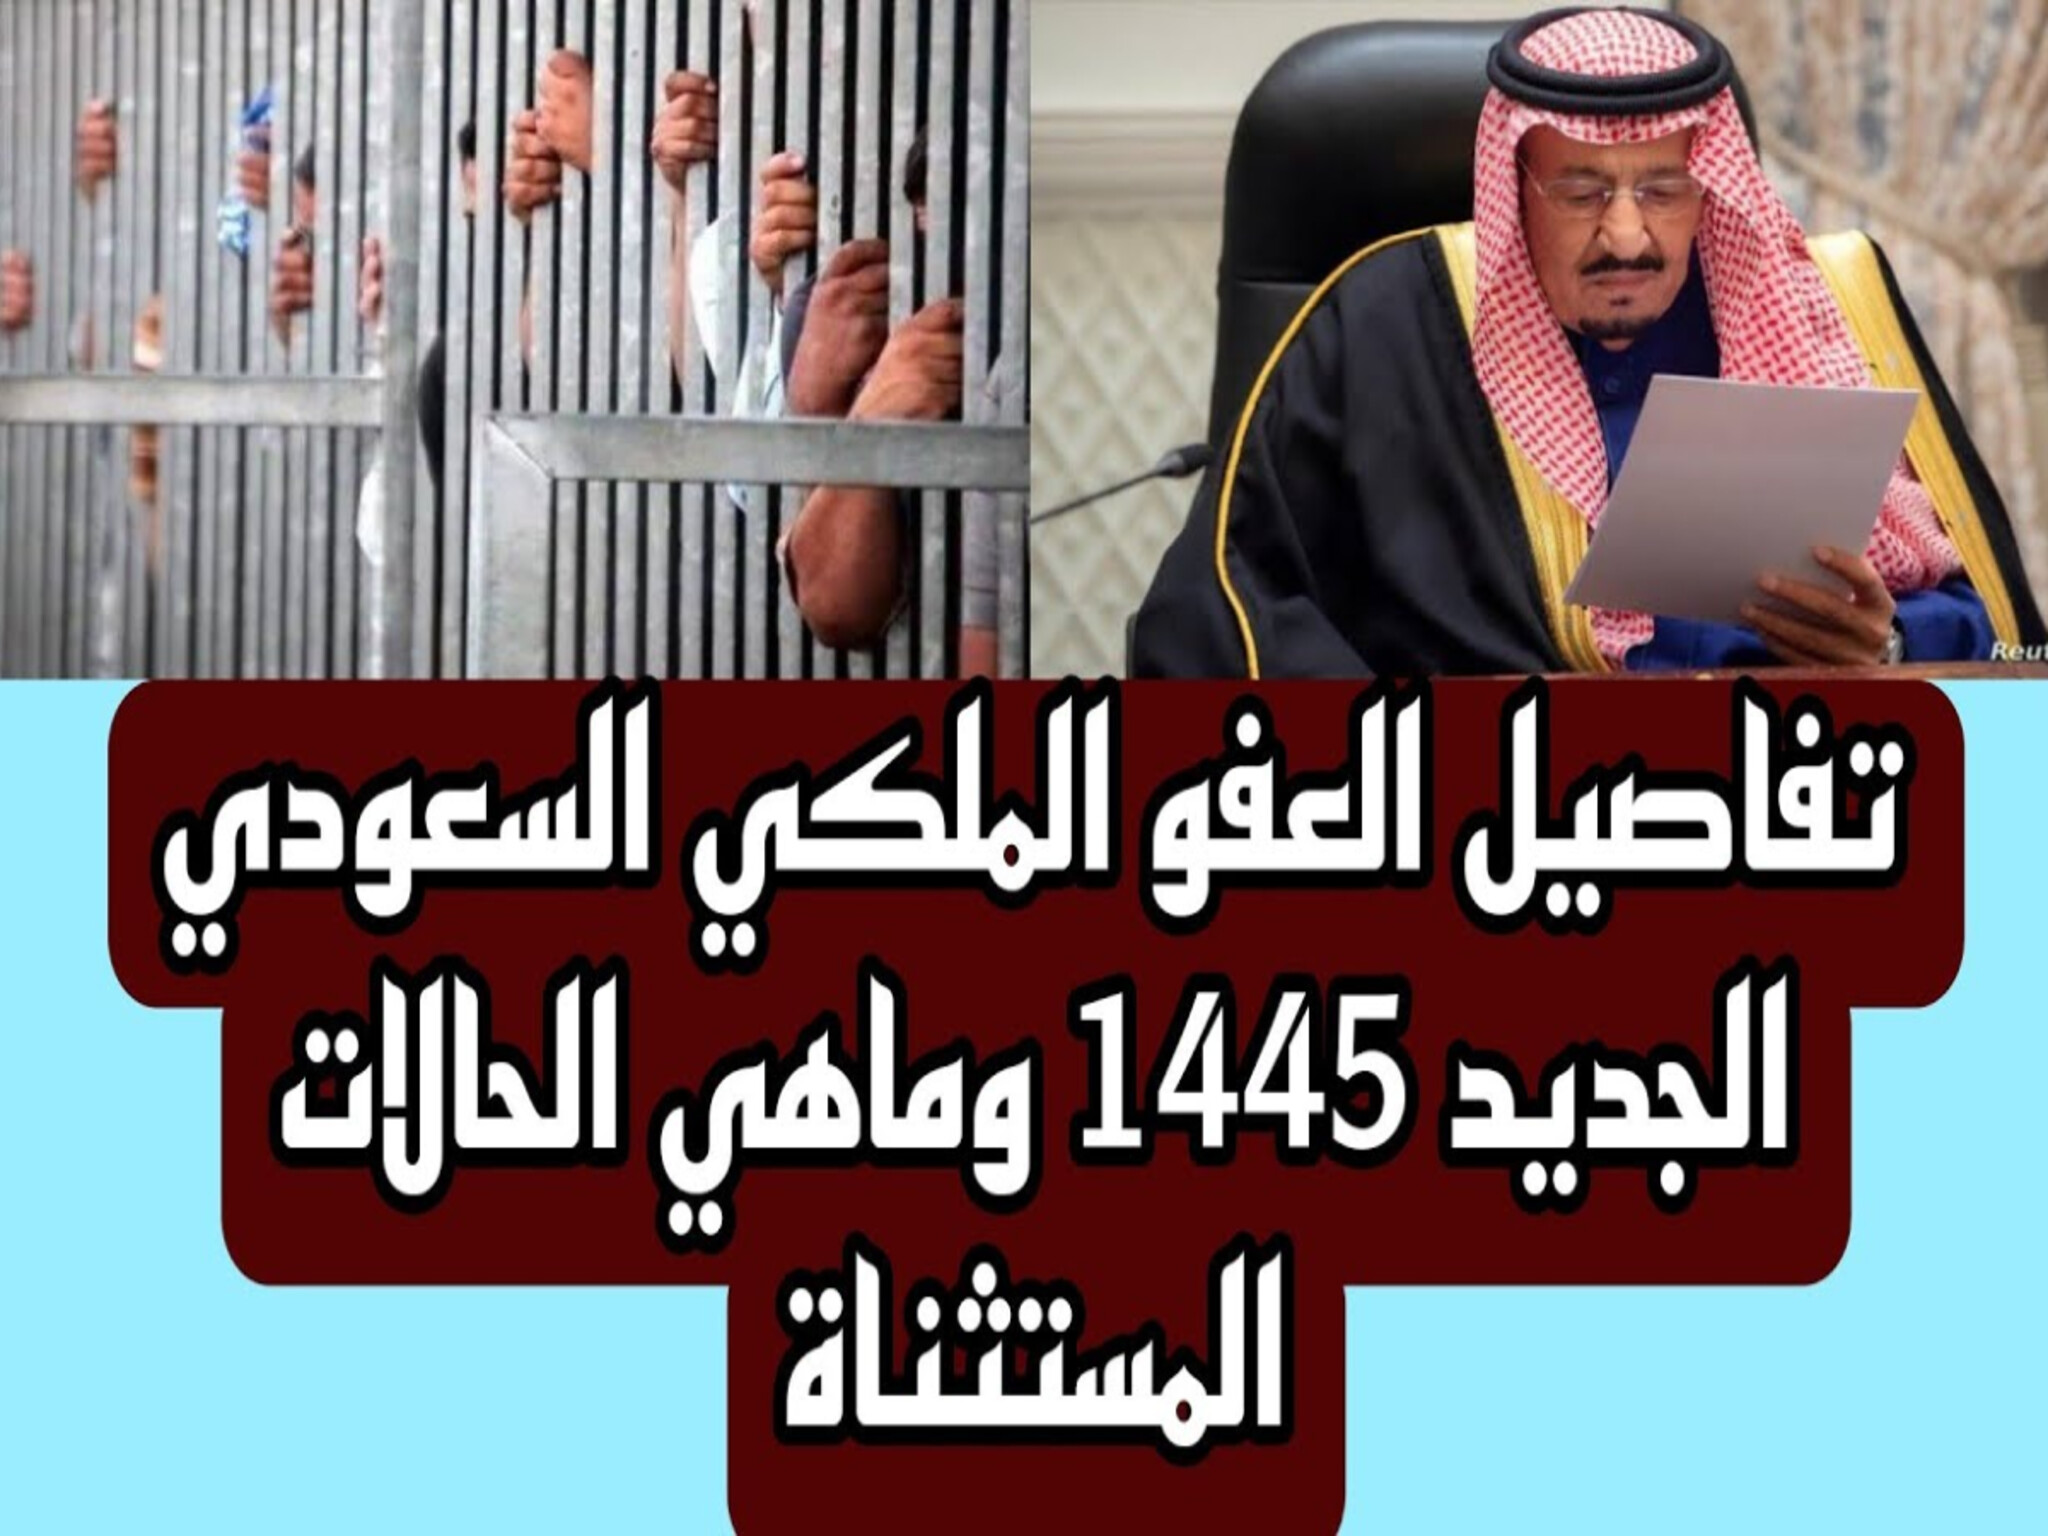 تفاصيل مرسوم العفو الملكي السعودي الجديد 1445هـ والفئات المستثناه